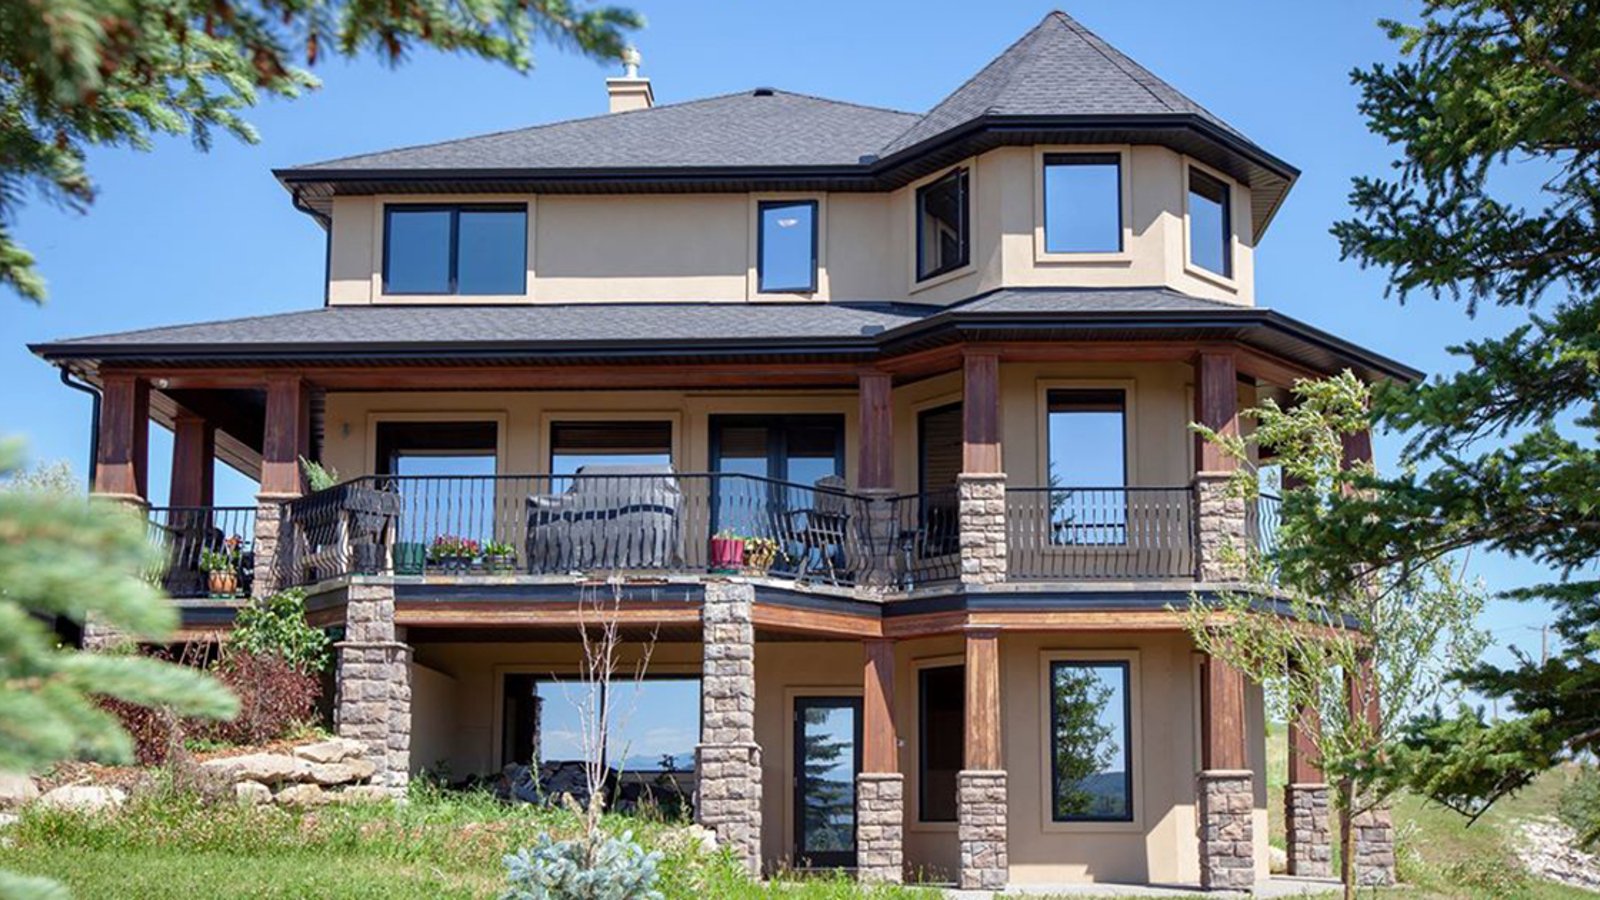 Gagnez une maison de 1,7M$ située au Canada grâce à ce concours d'écriture